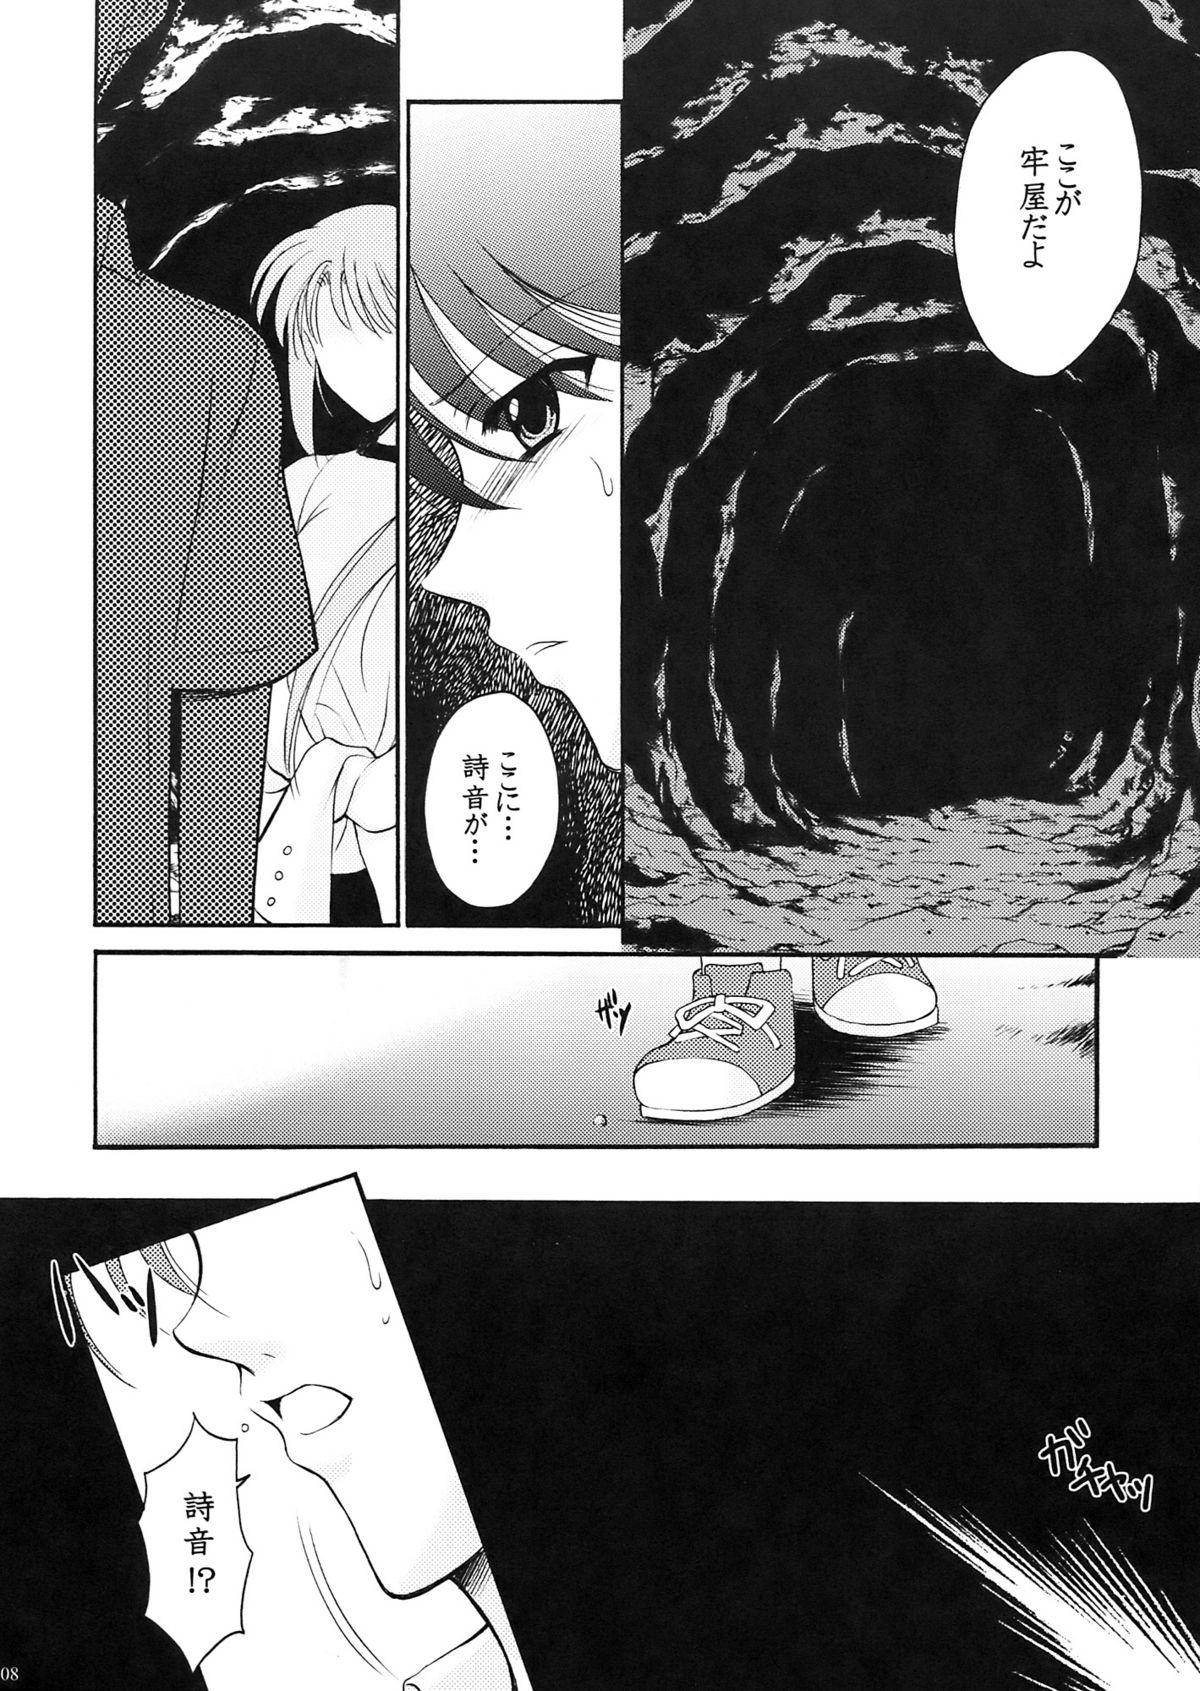 Sperm Higupan 3 - Higurashi no naku koro ni Gang Bang - Page 7